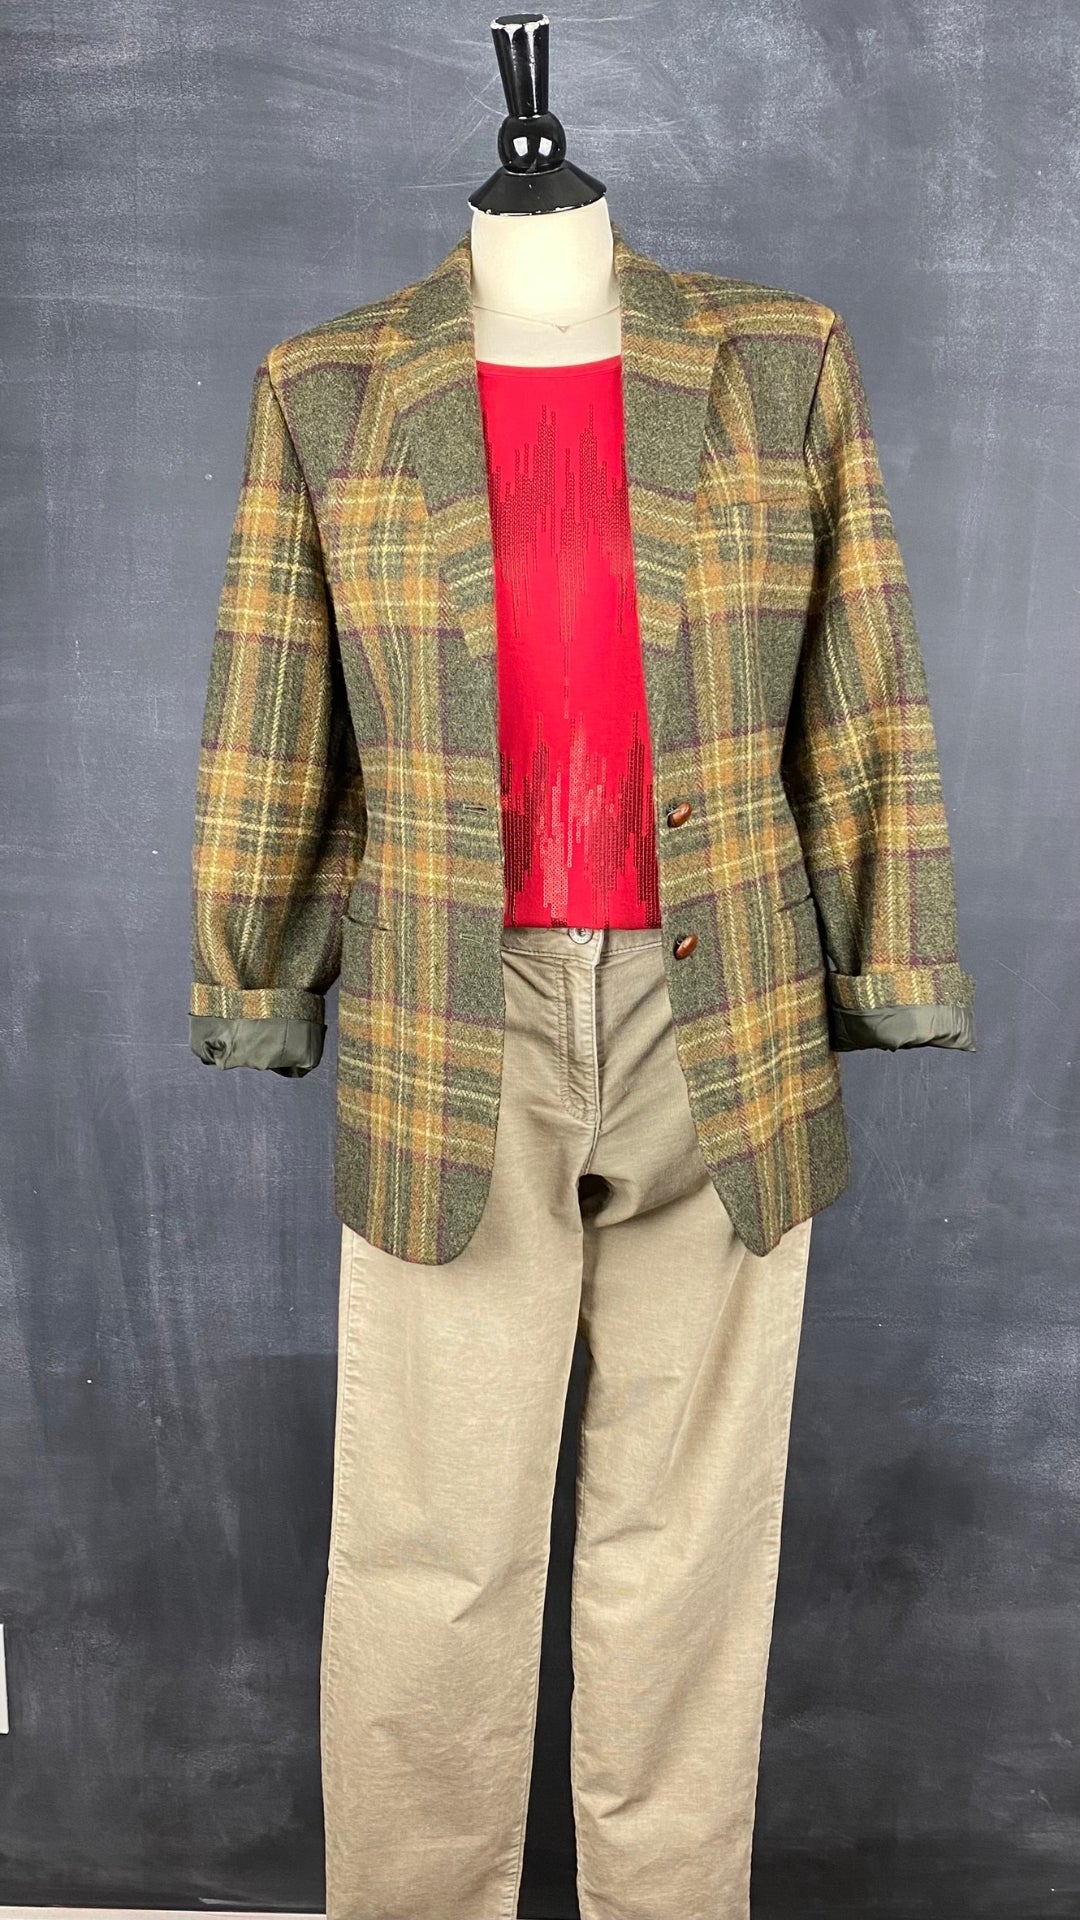 Pantalon en fin velours côtelé beige Brax, taille 31. Vue de l'agencement avec le chandail rouge à paillettes et le blazer à carreaux Ralph Lauren.